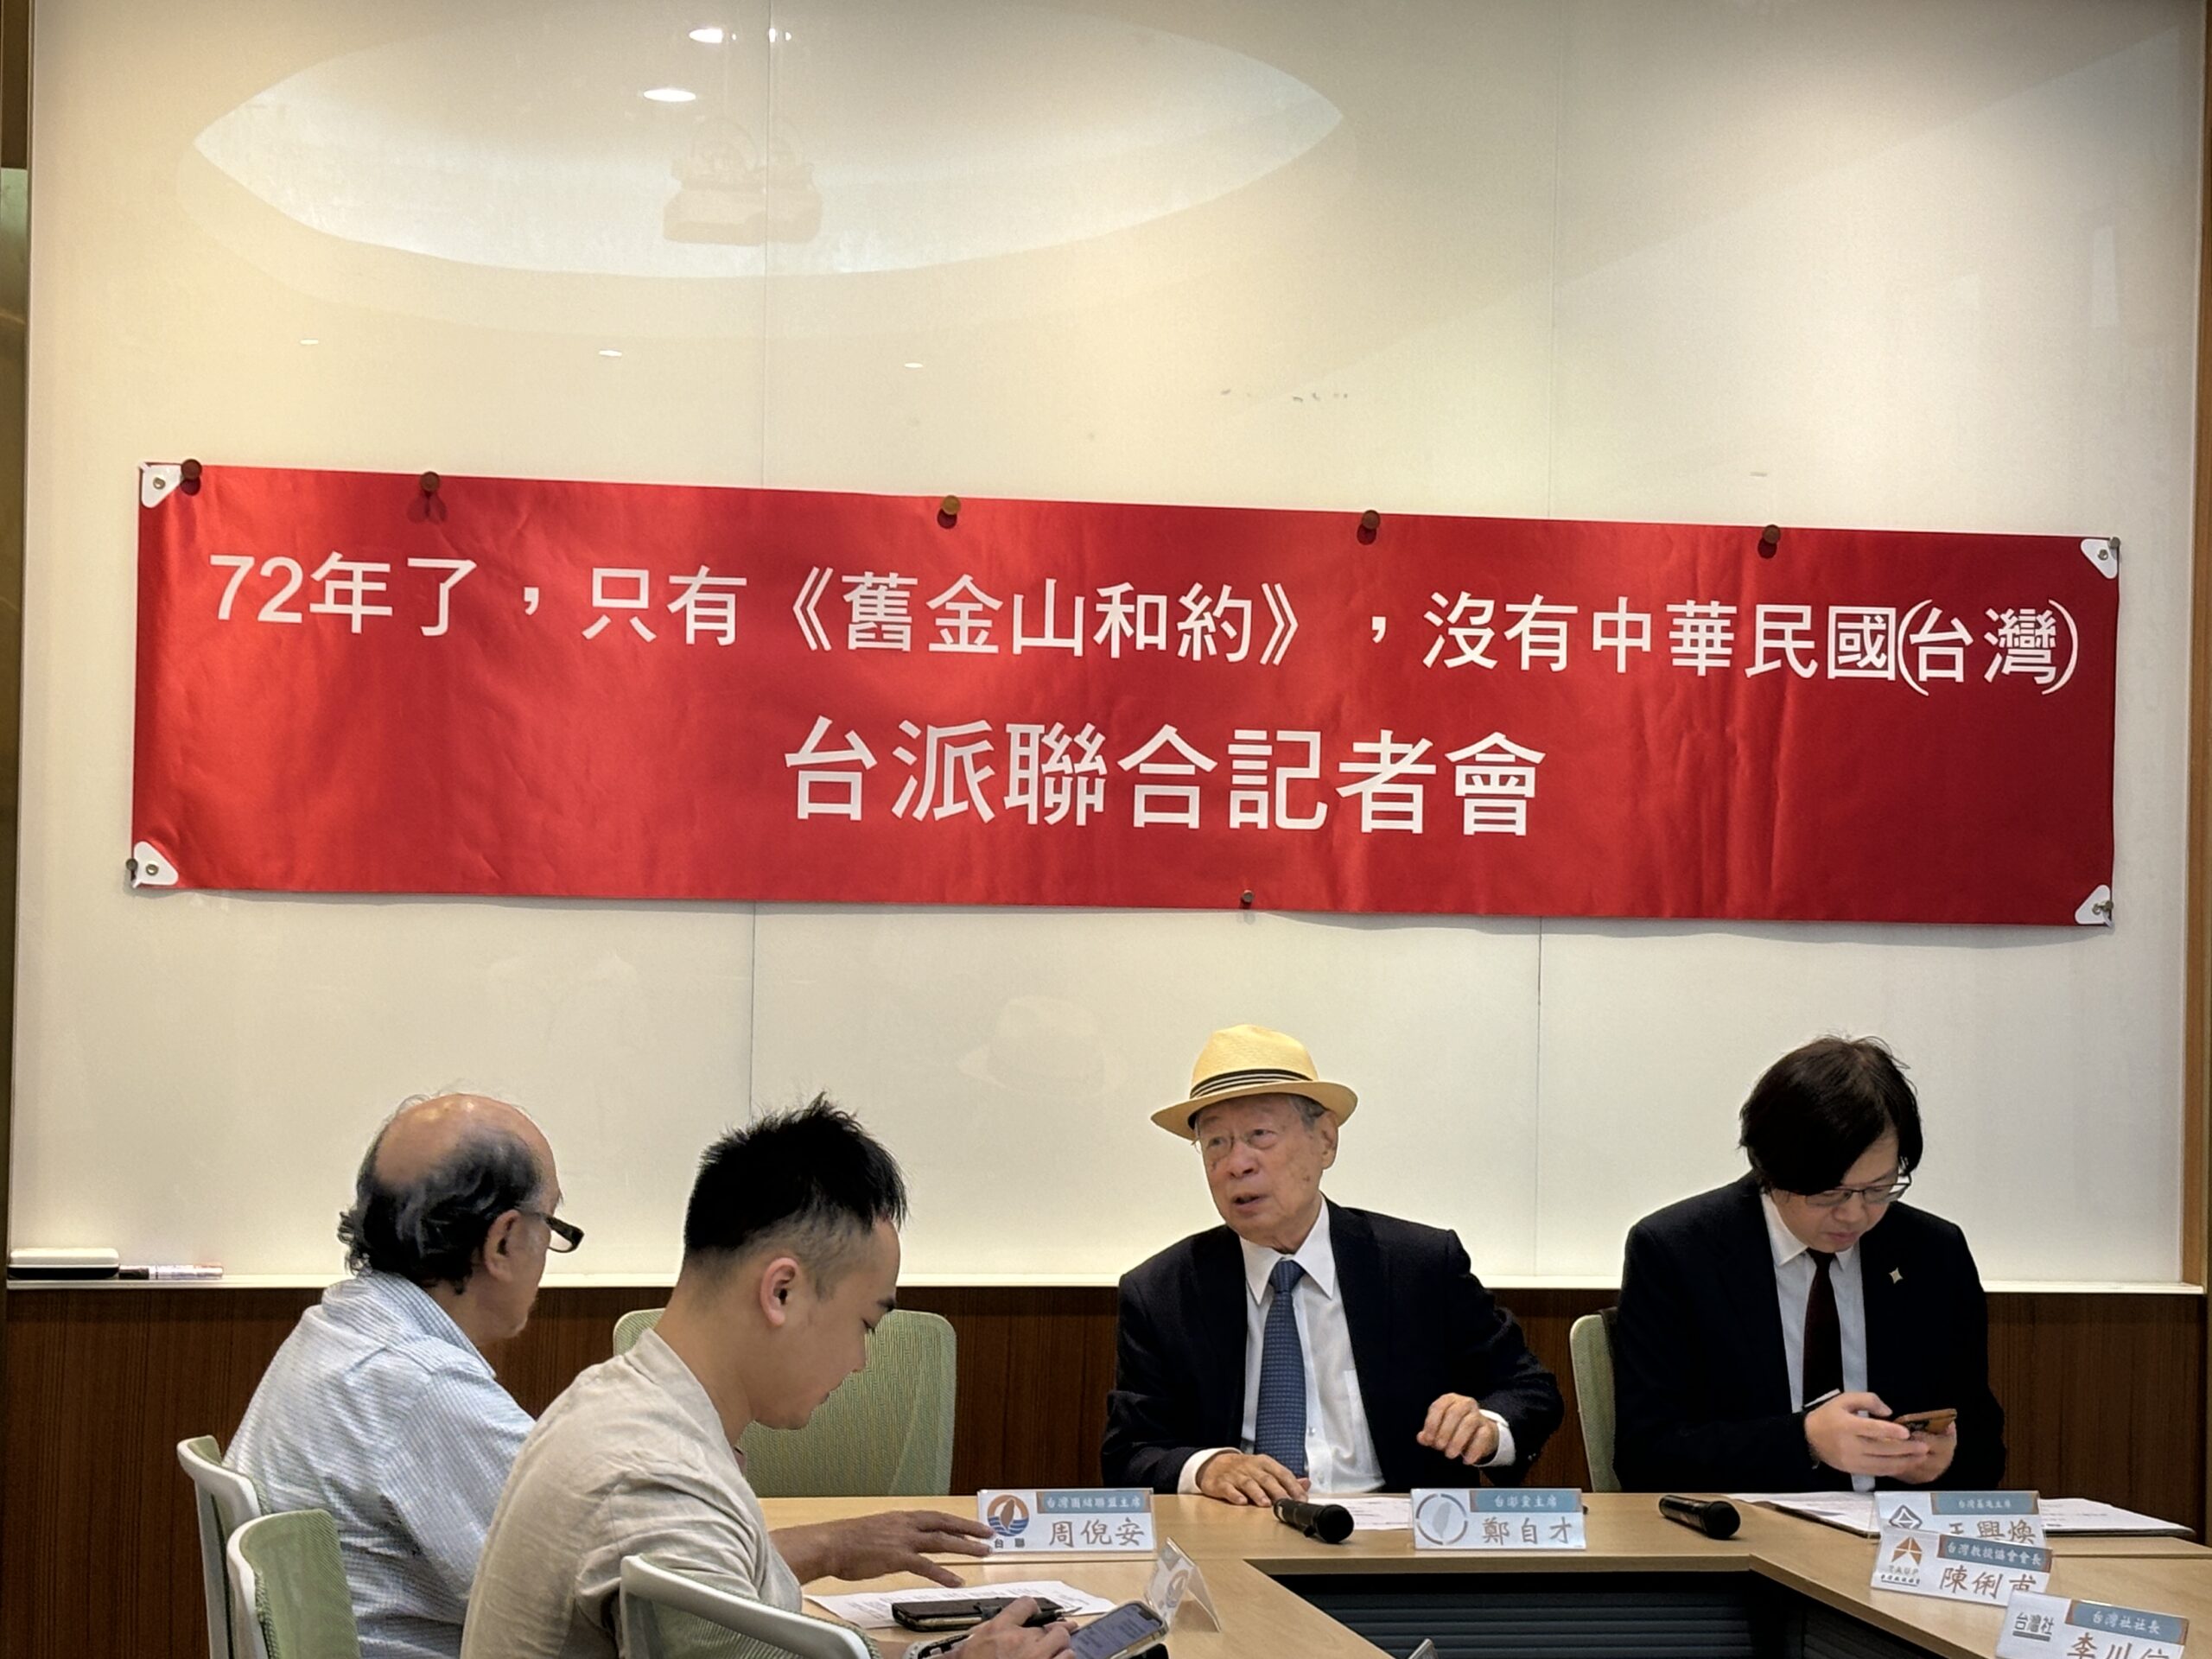 72年假议题『台湾光复』  台派团体召开记者会